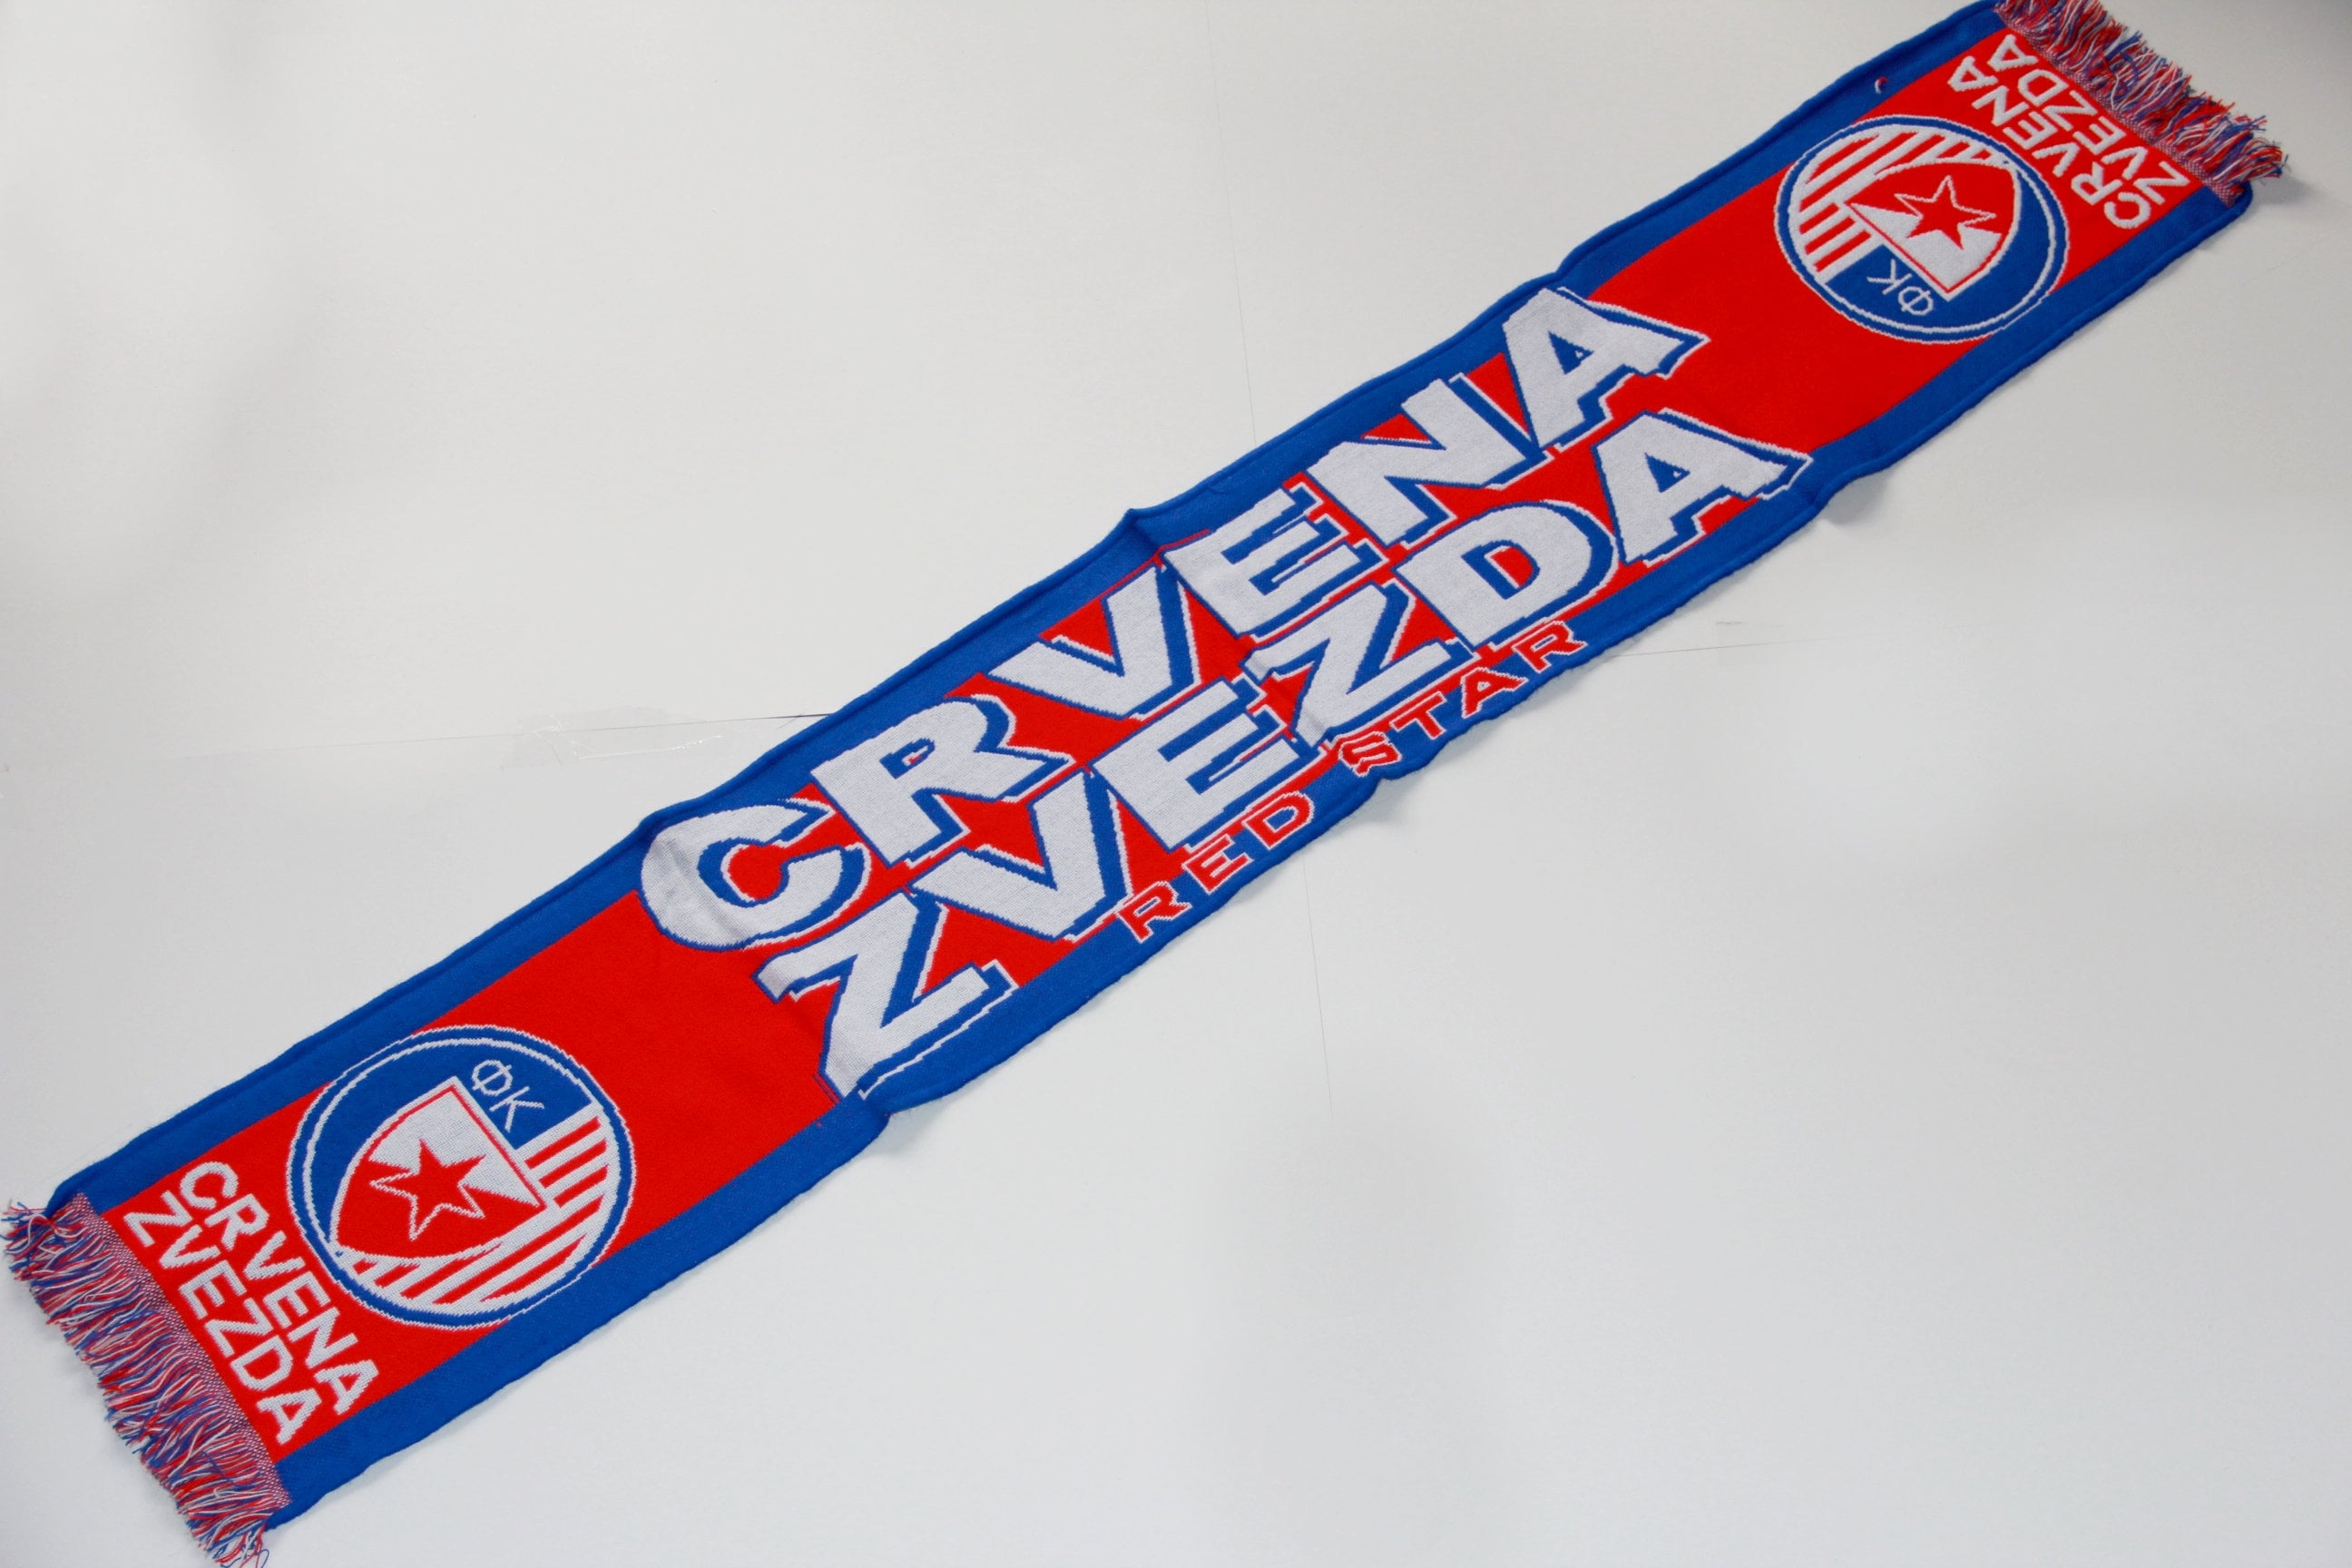 Crvena Zvezda - Red Star Greeting Card for Sale by VRedBaller